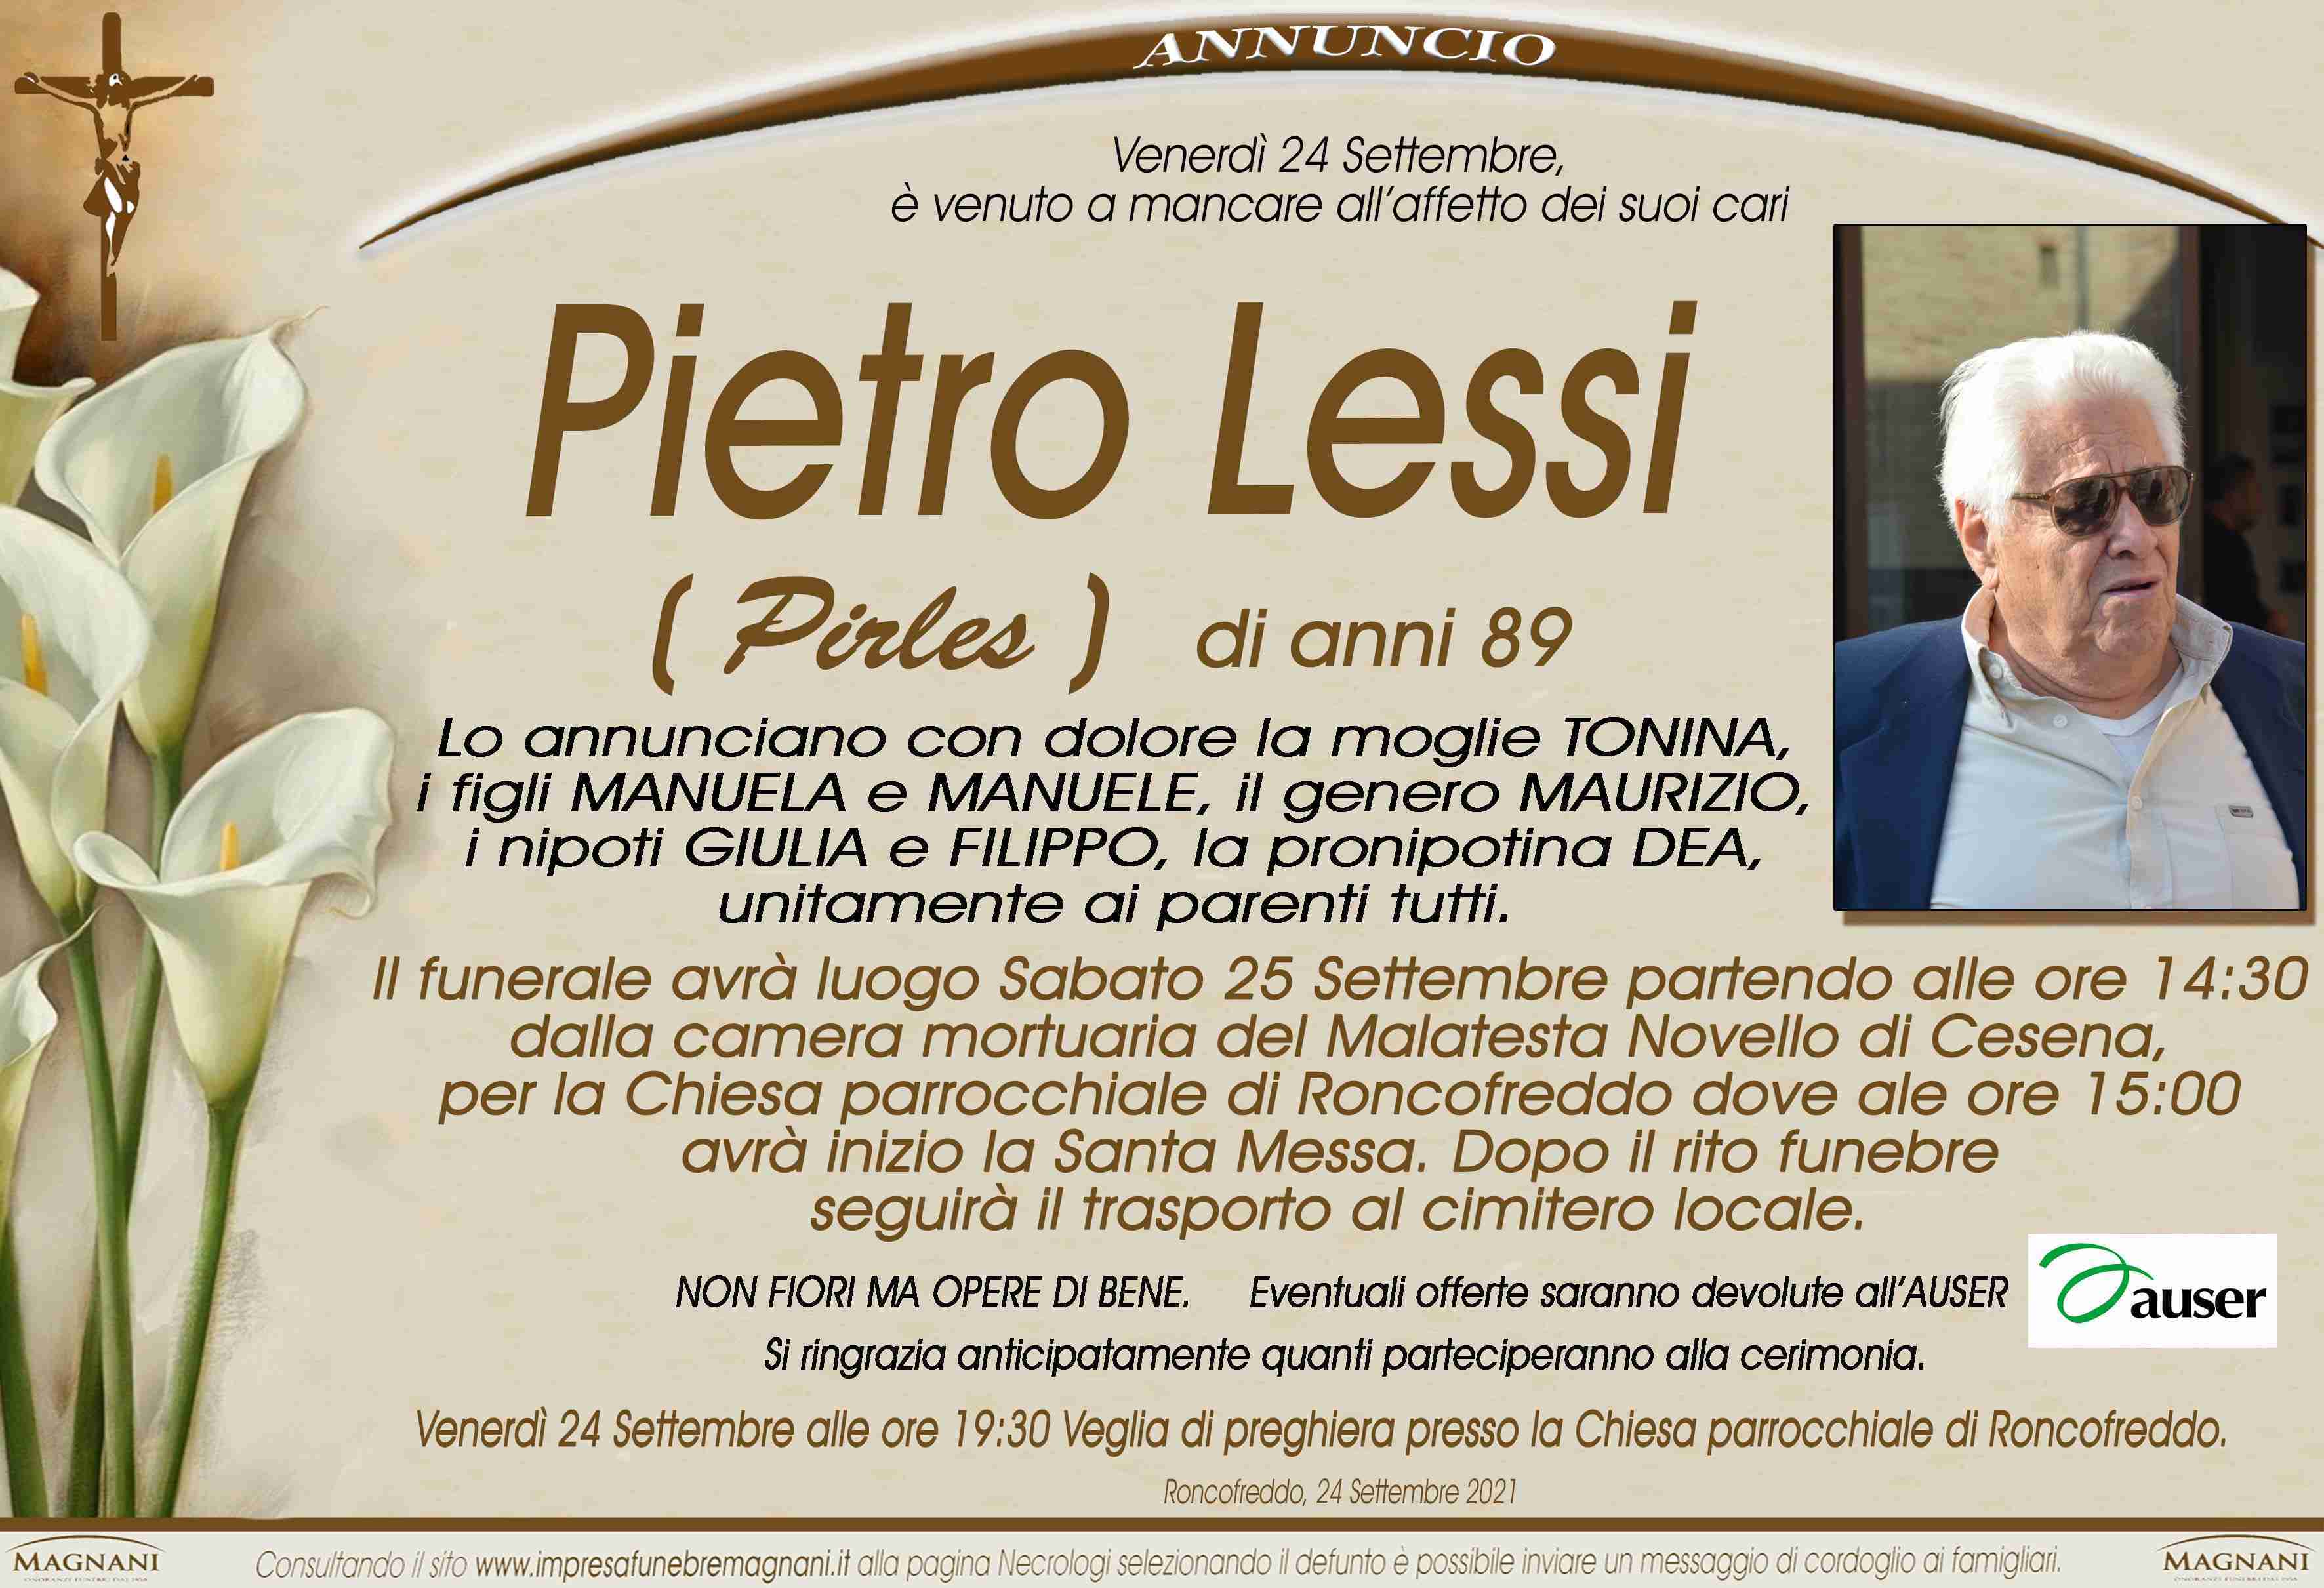 Pietro Lessi (Pirles)